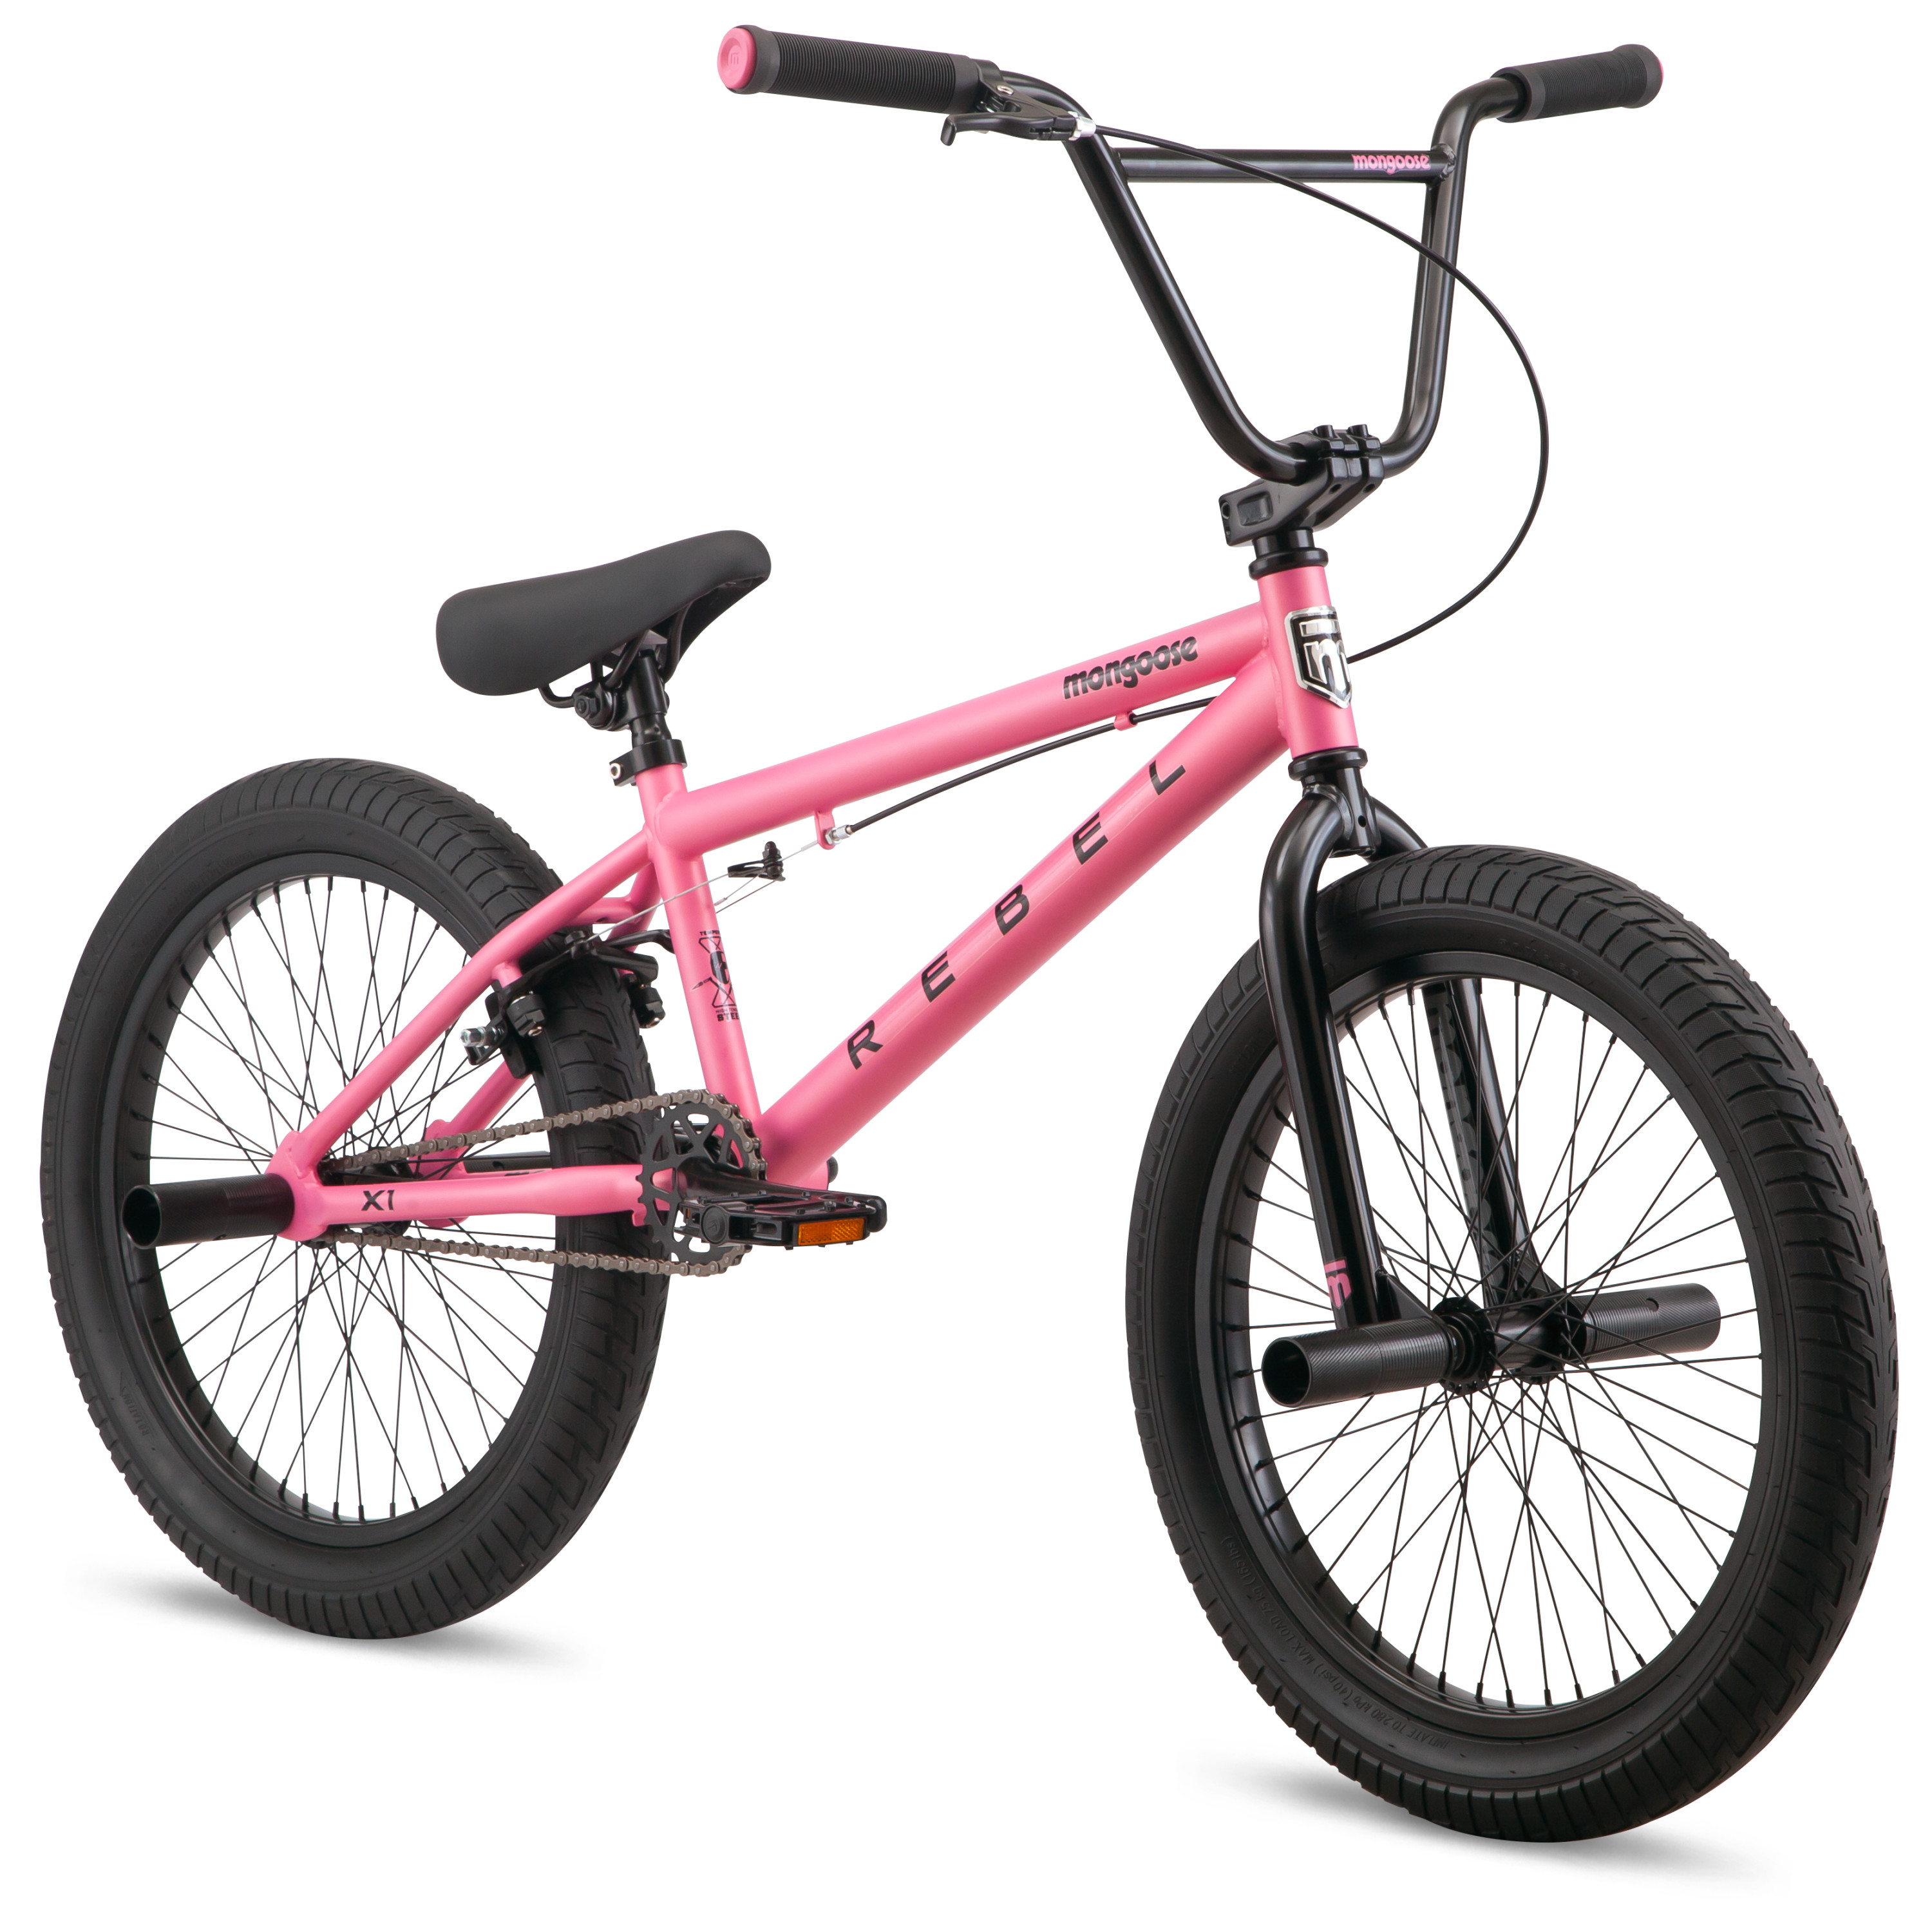 Mongoose 20" Girl's Rebel X1 BMX Child Bike, Pink - image 3 of 10